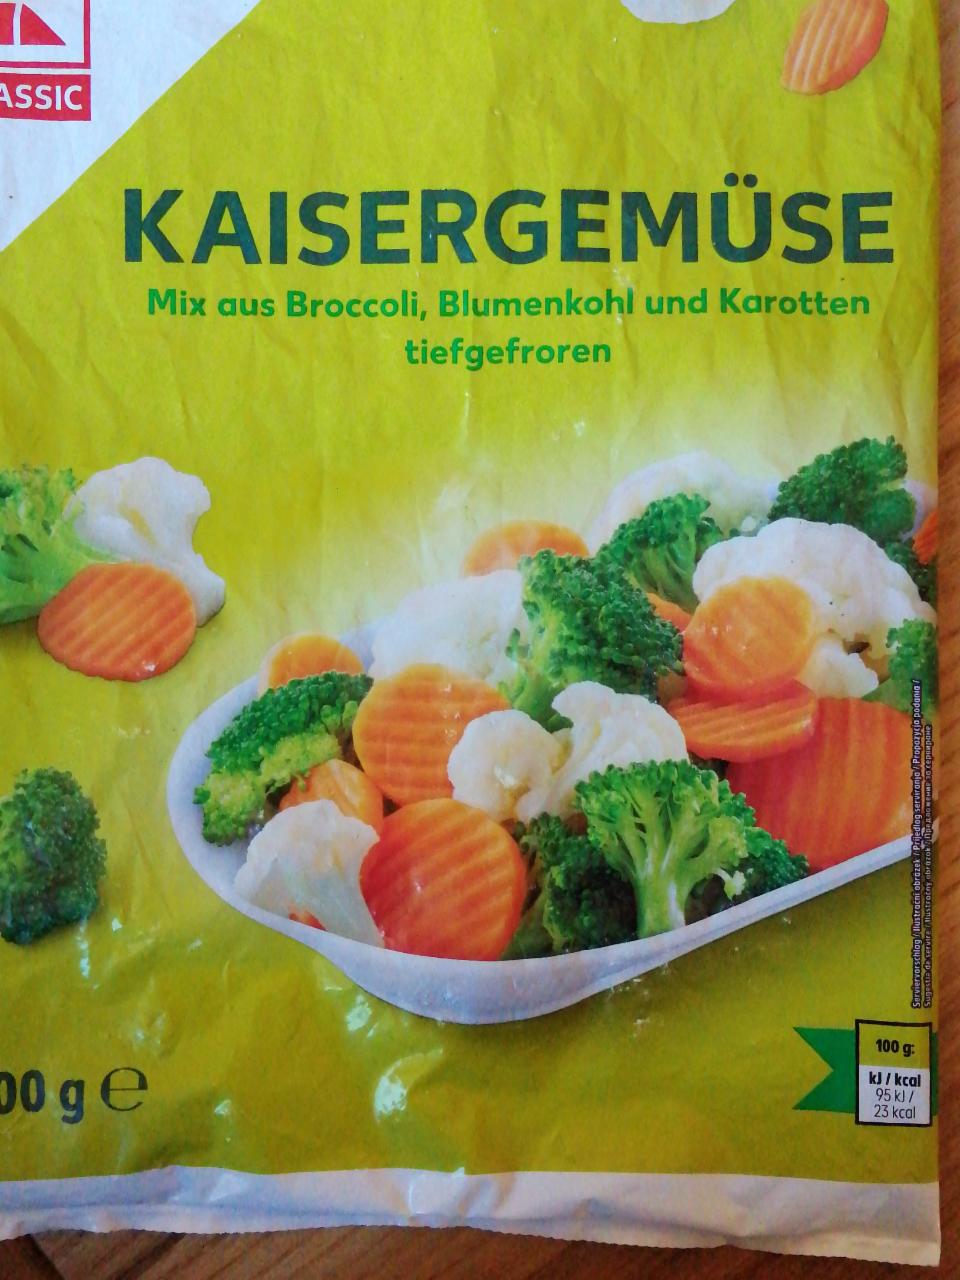 Fotografie - Kaisergemüse Mix aus Broccoli, Blumenkohl und Karotten tiefgefroren K-Classic